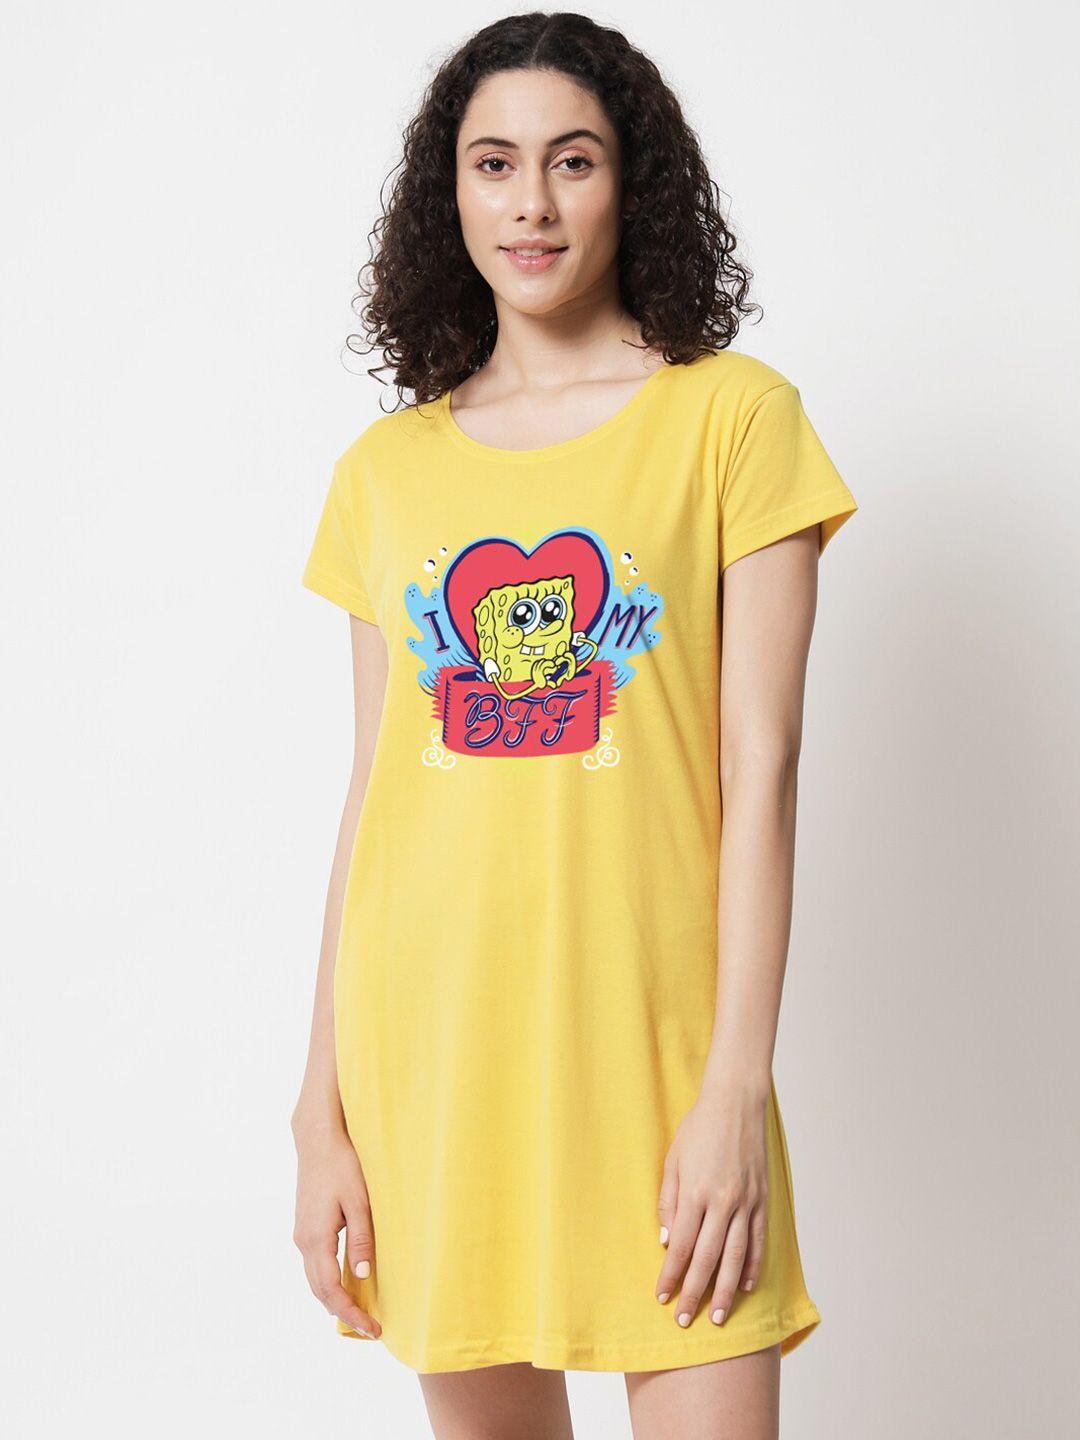 fflirtygo cartoon characters printed round neck t-shirt nightdress